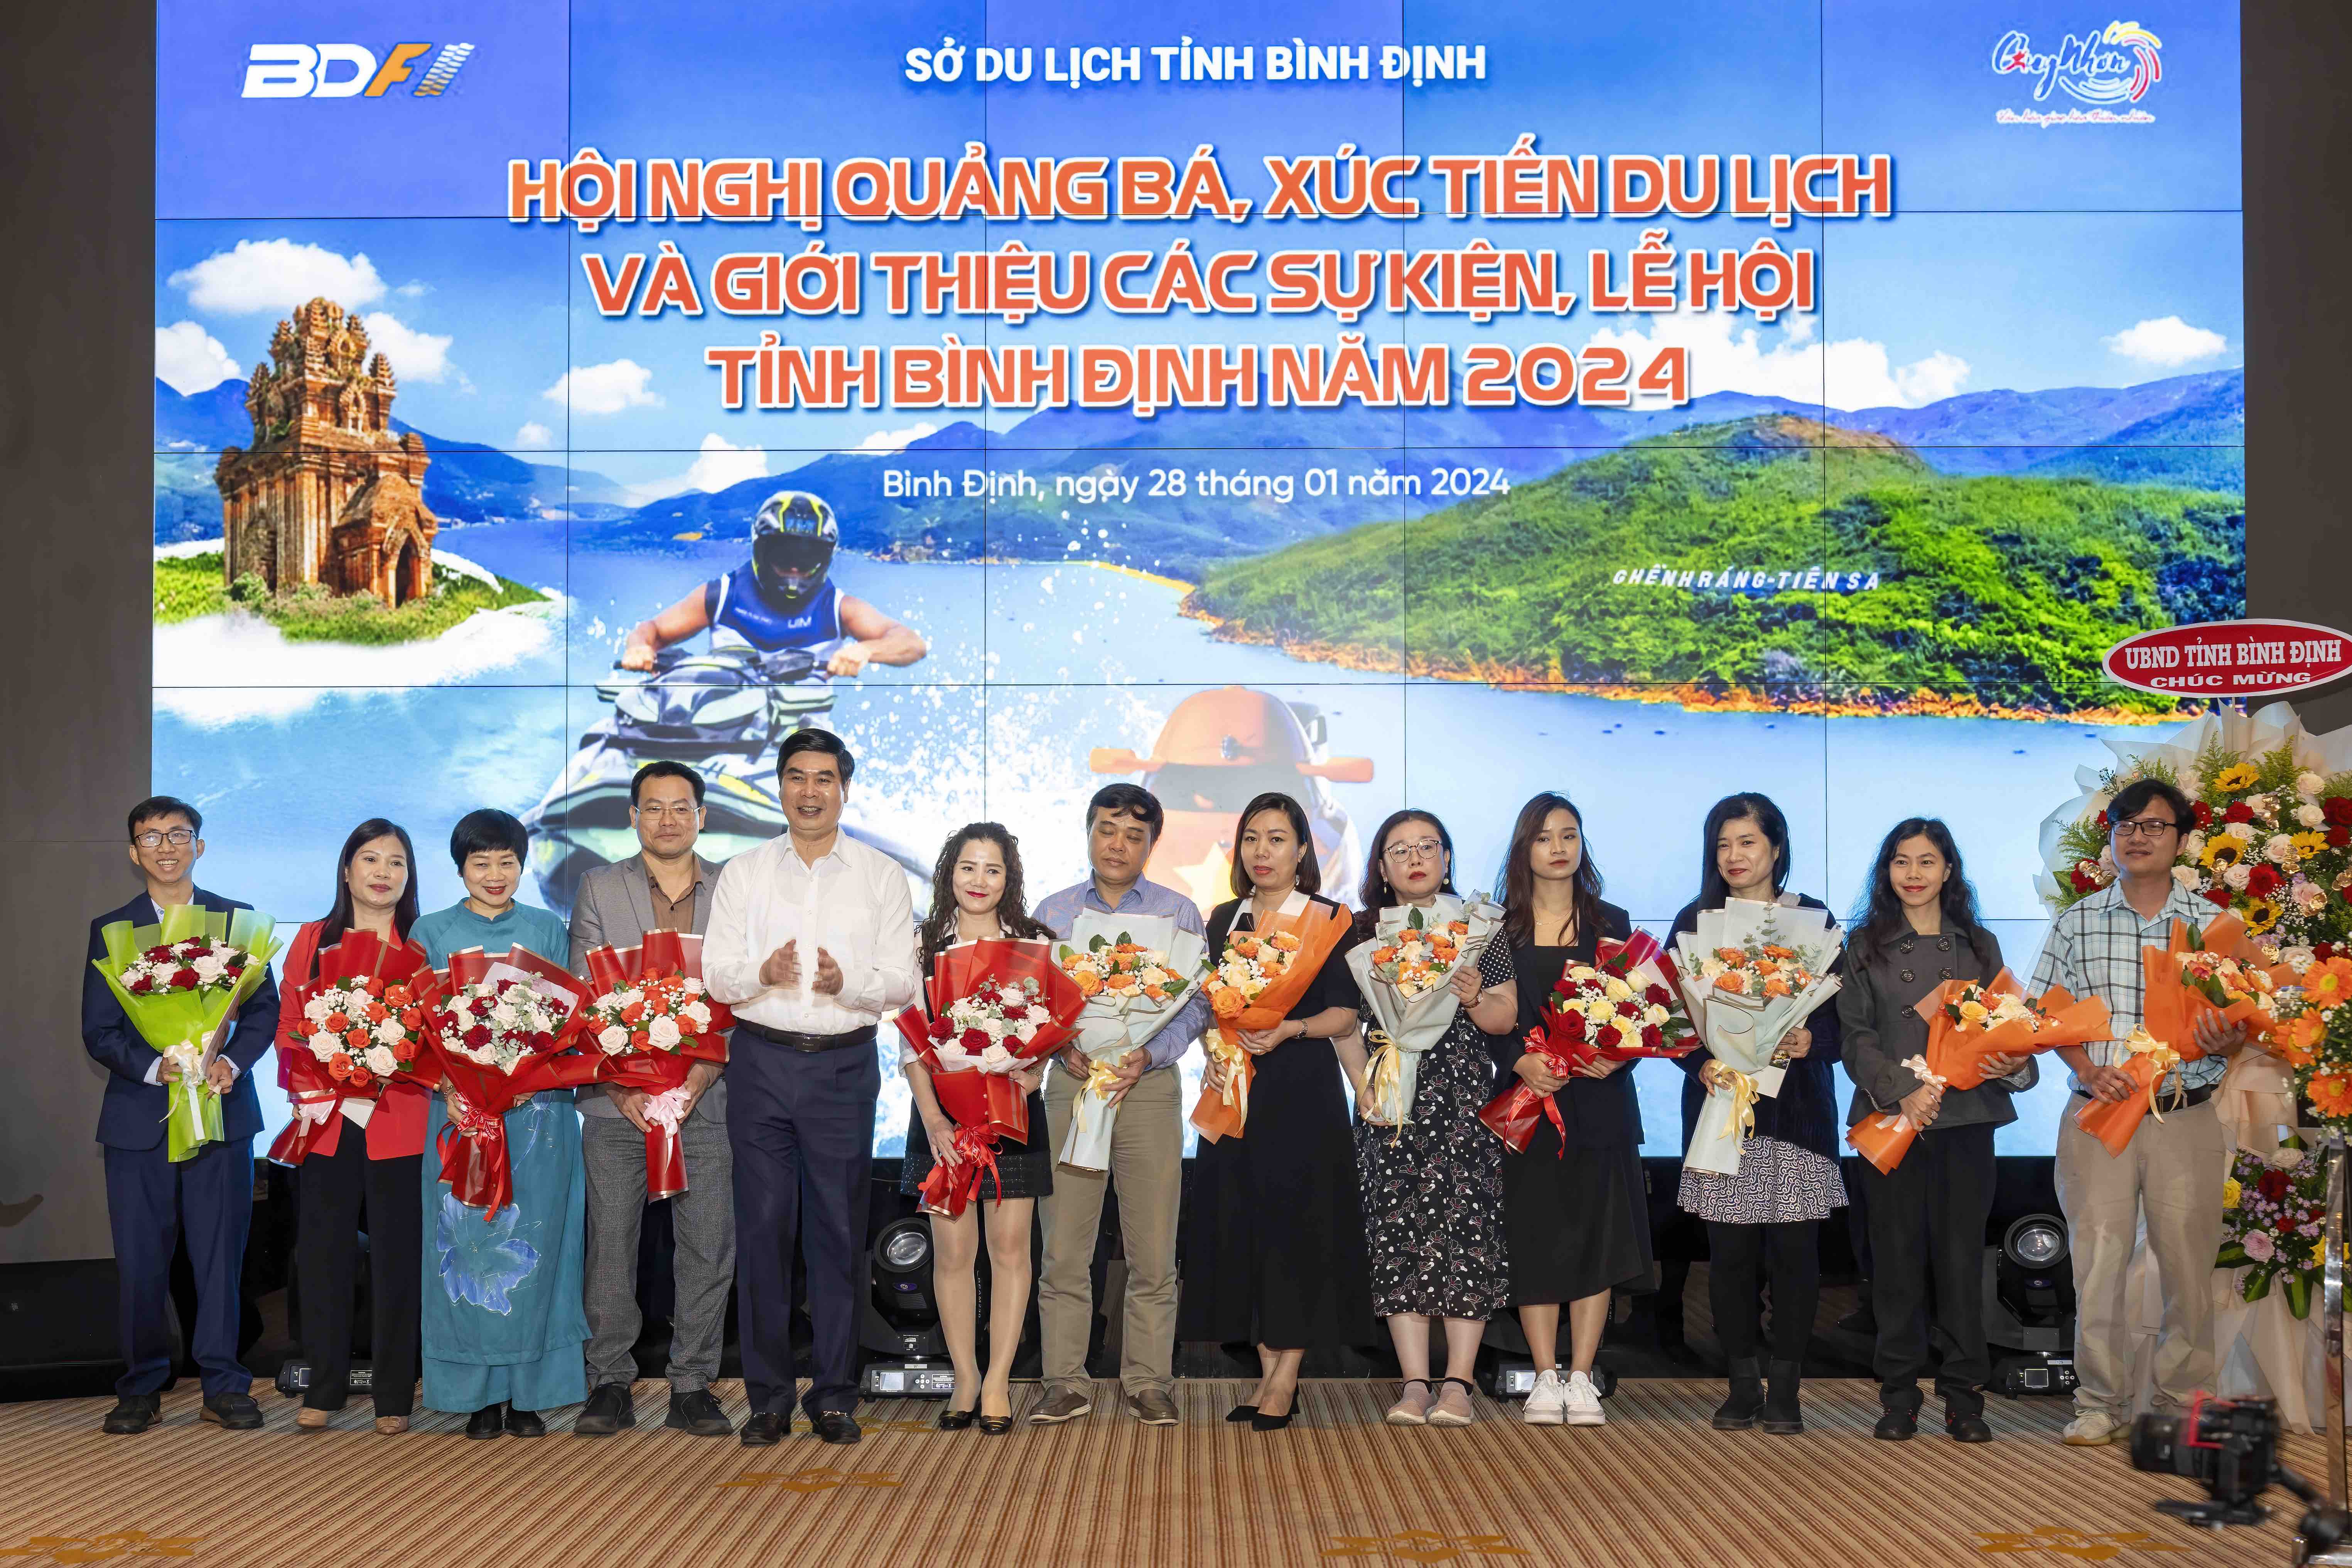 Du lịch Tân Thế Giới - New World Travel tham dự Hội nghị quảng bá, xúc tiến du lịch và giới thiệu các sự kiện, lễ hội tỉnh Bình Định 2024